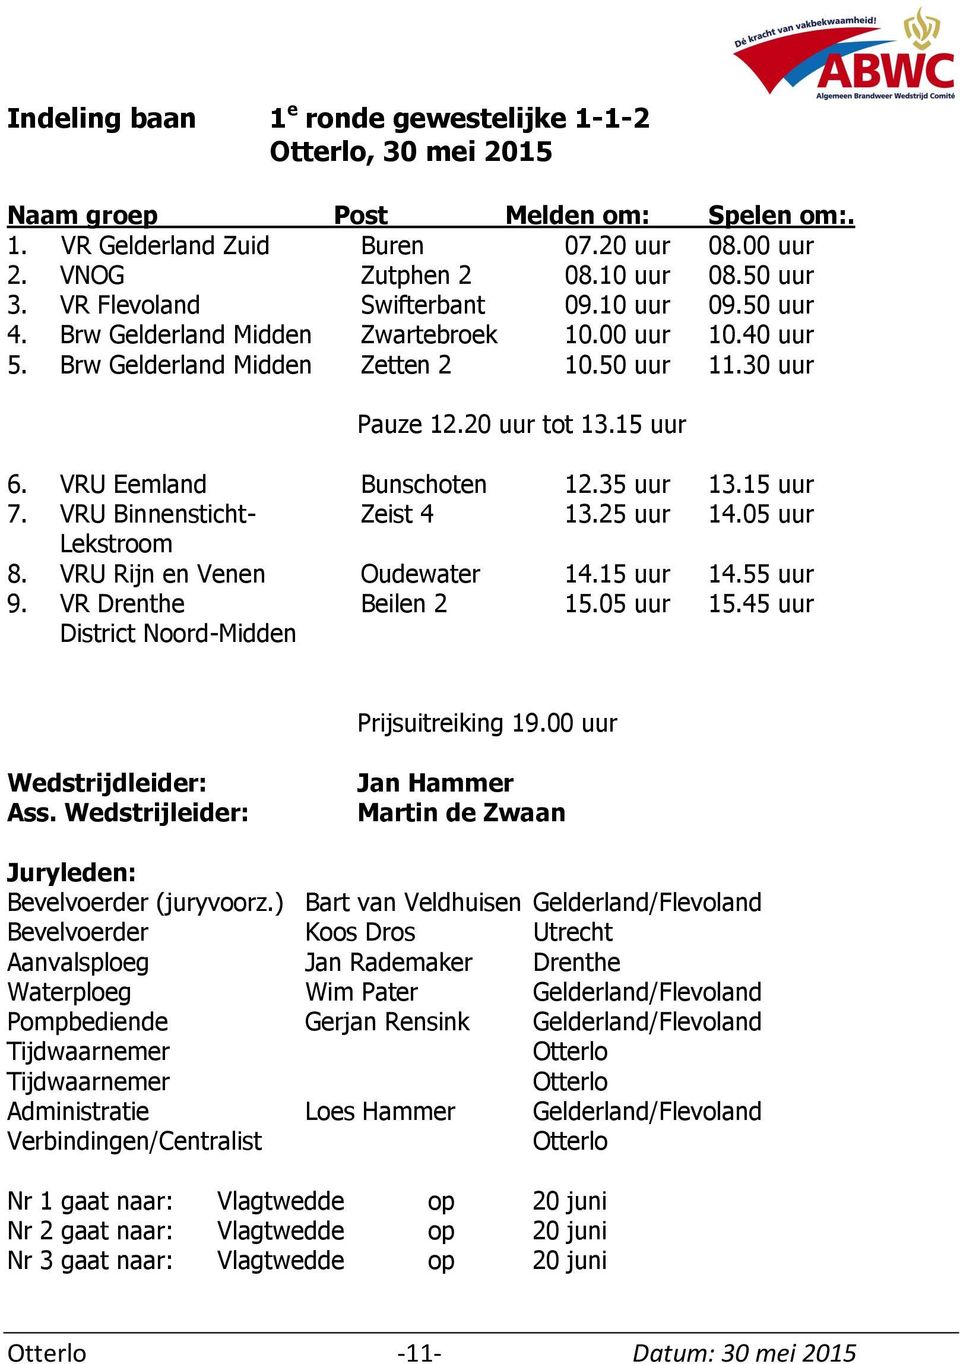 VRU Eemland Bunschoten 12.35 uur 13.15 uur 7. VRU Binnensticht- Zeist 4 13.25 uur 14.05 uur Lekstroom 8. VRU Rijn en Venen Oudewater 14.15 uur 14.55 uur 9. VR Drenthe Beilen 2 15.05 uur 15.